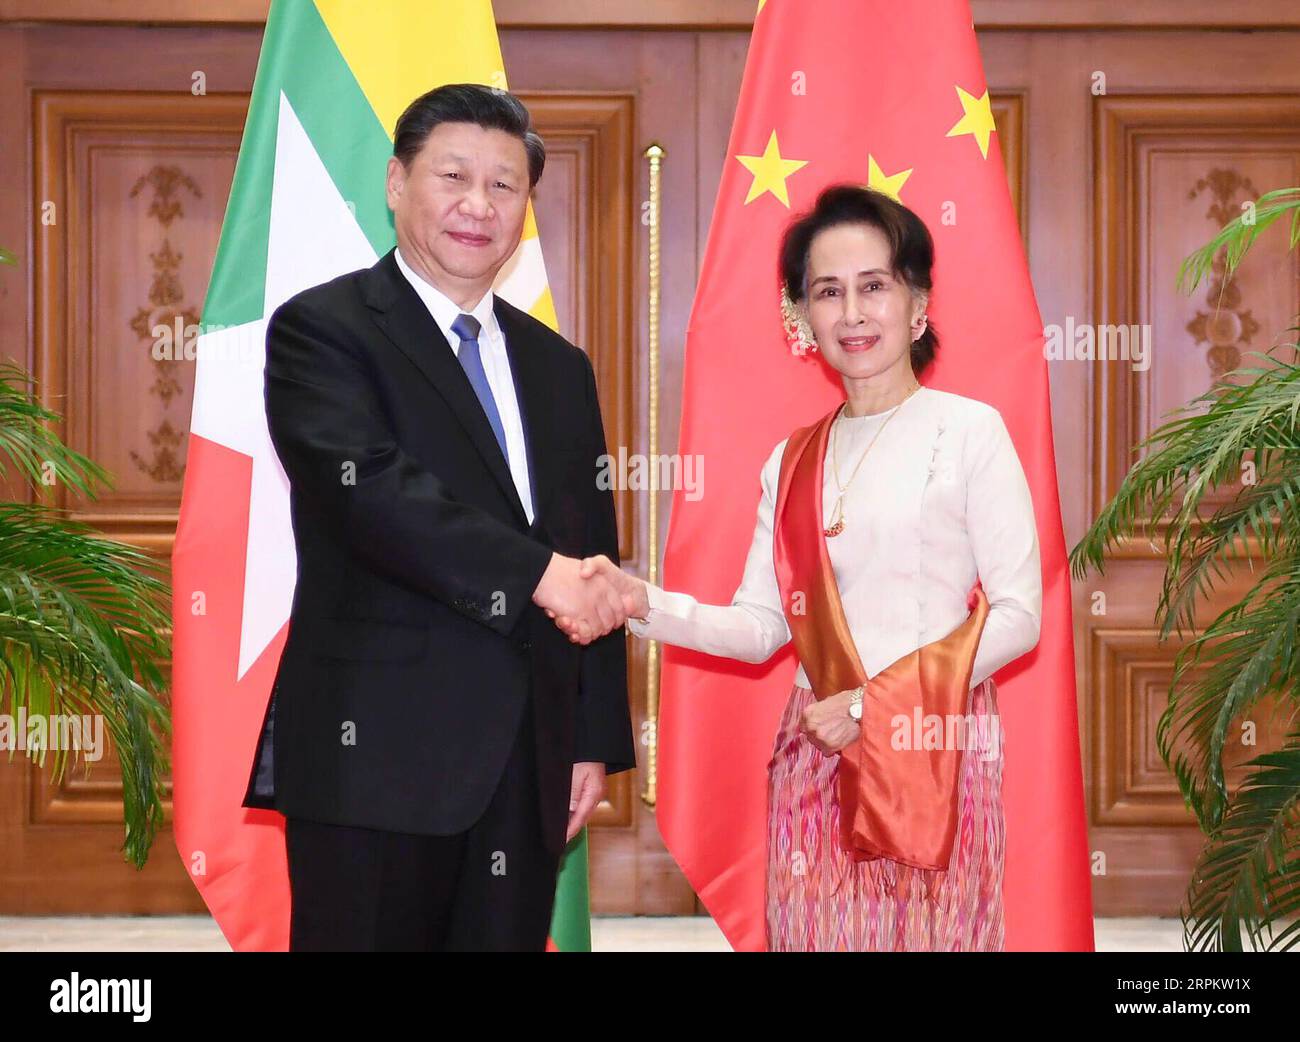 Actualités Bilder des Tages 200118 -- NAY PYI TAW, 18 janvier 2020 -- le président chinois Xi Jinping a des entretiens officiels avec la conseillère d'État du Myanmar, Aung San Suu Kyi, à Nay Pyi Taw, Myanmar, le 18 janvier 2020. MYANMAR-NAY PYI TAW-XI JINPING-AUNG SAN SUU KYI-PARLE XIEXHUANCHI PUBLICATIONXNOTXINXCHN Banque D'Images